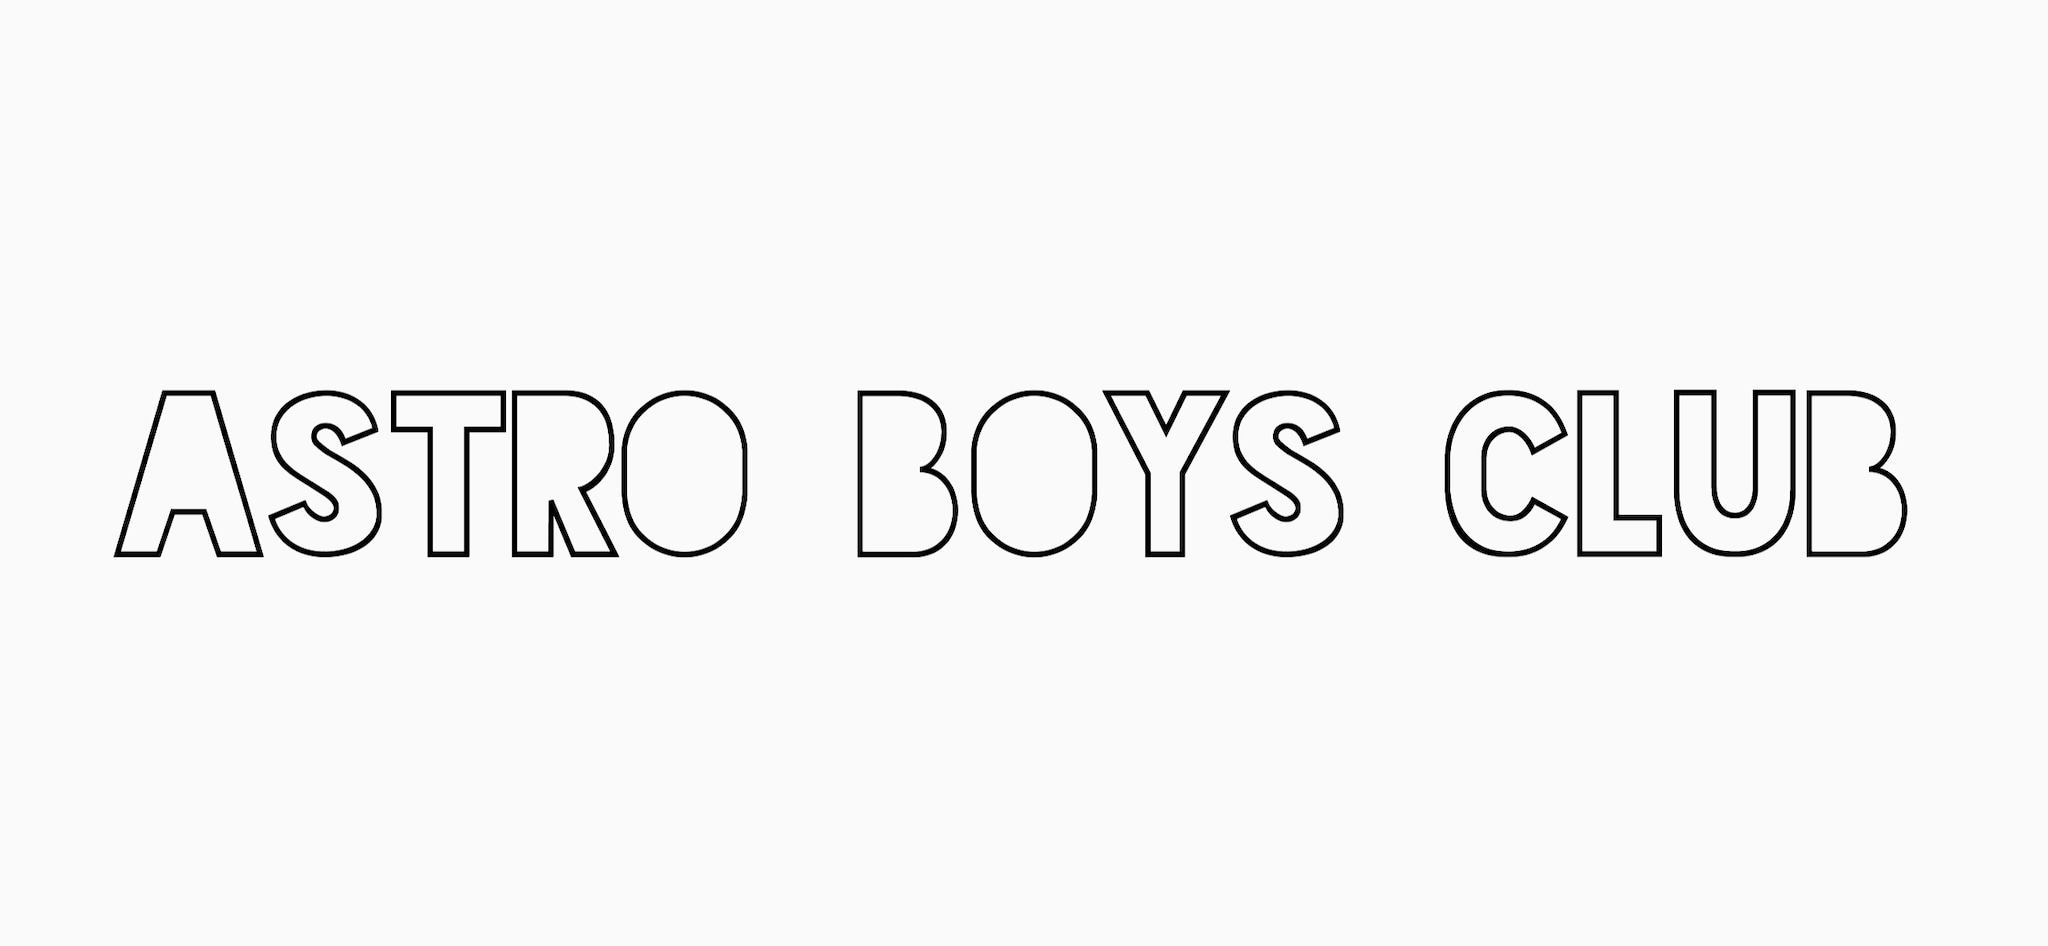 ASTRO BOYS CLUB